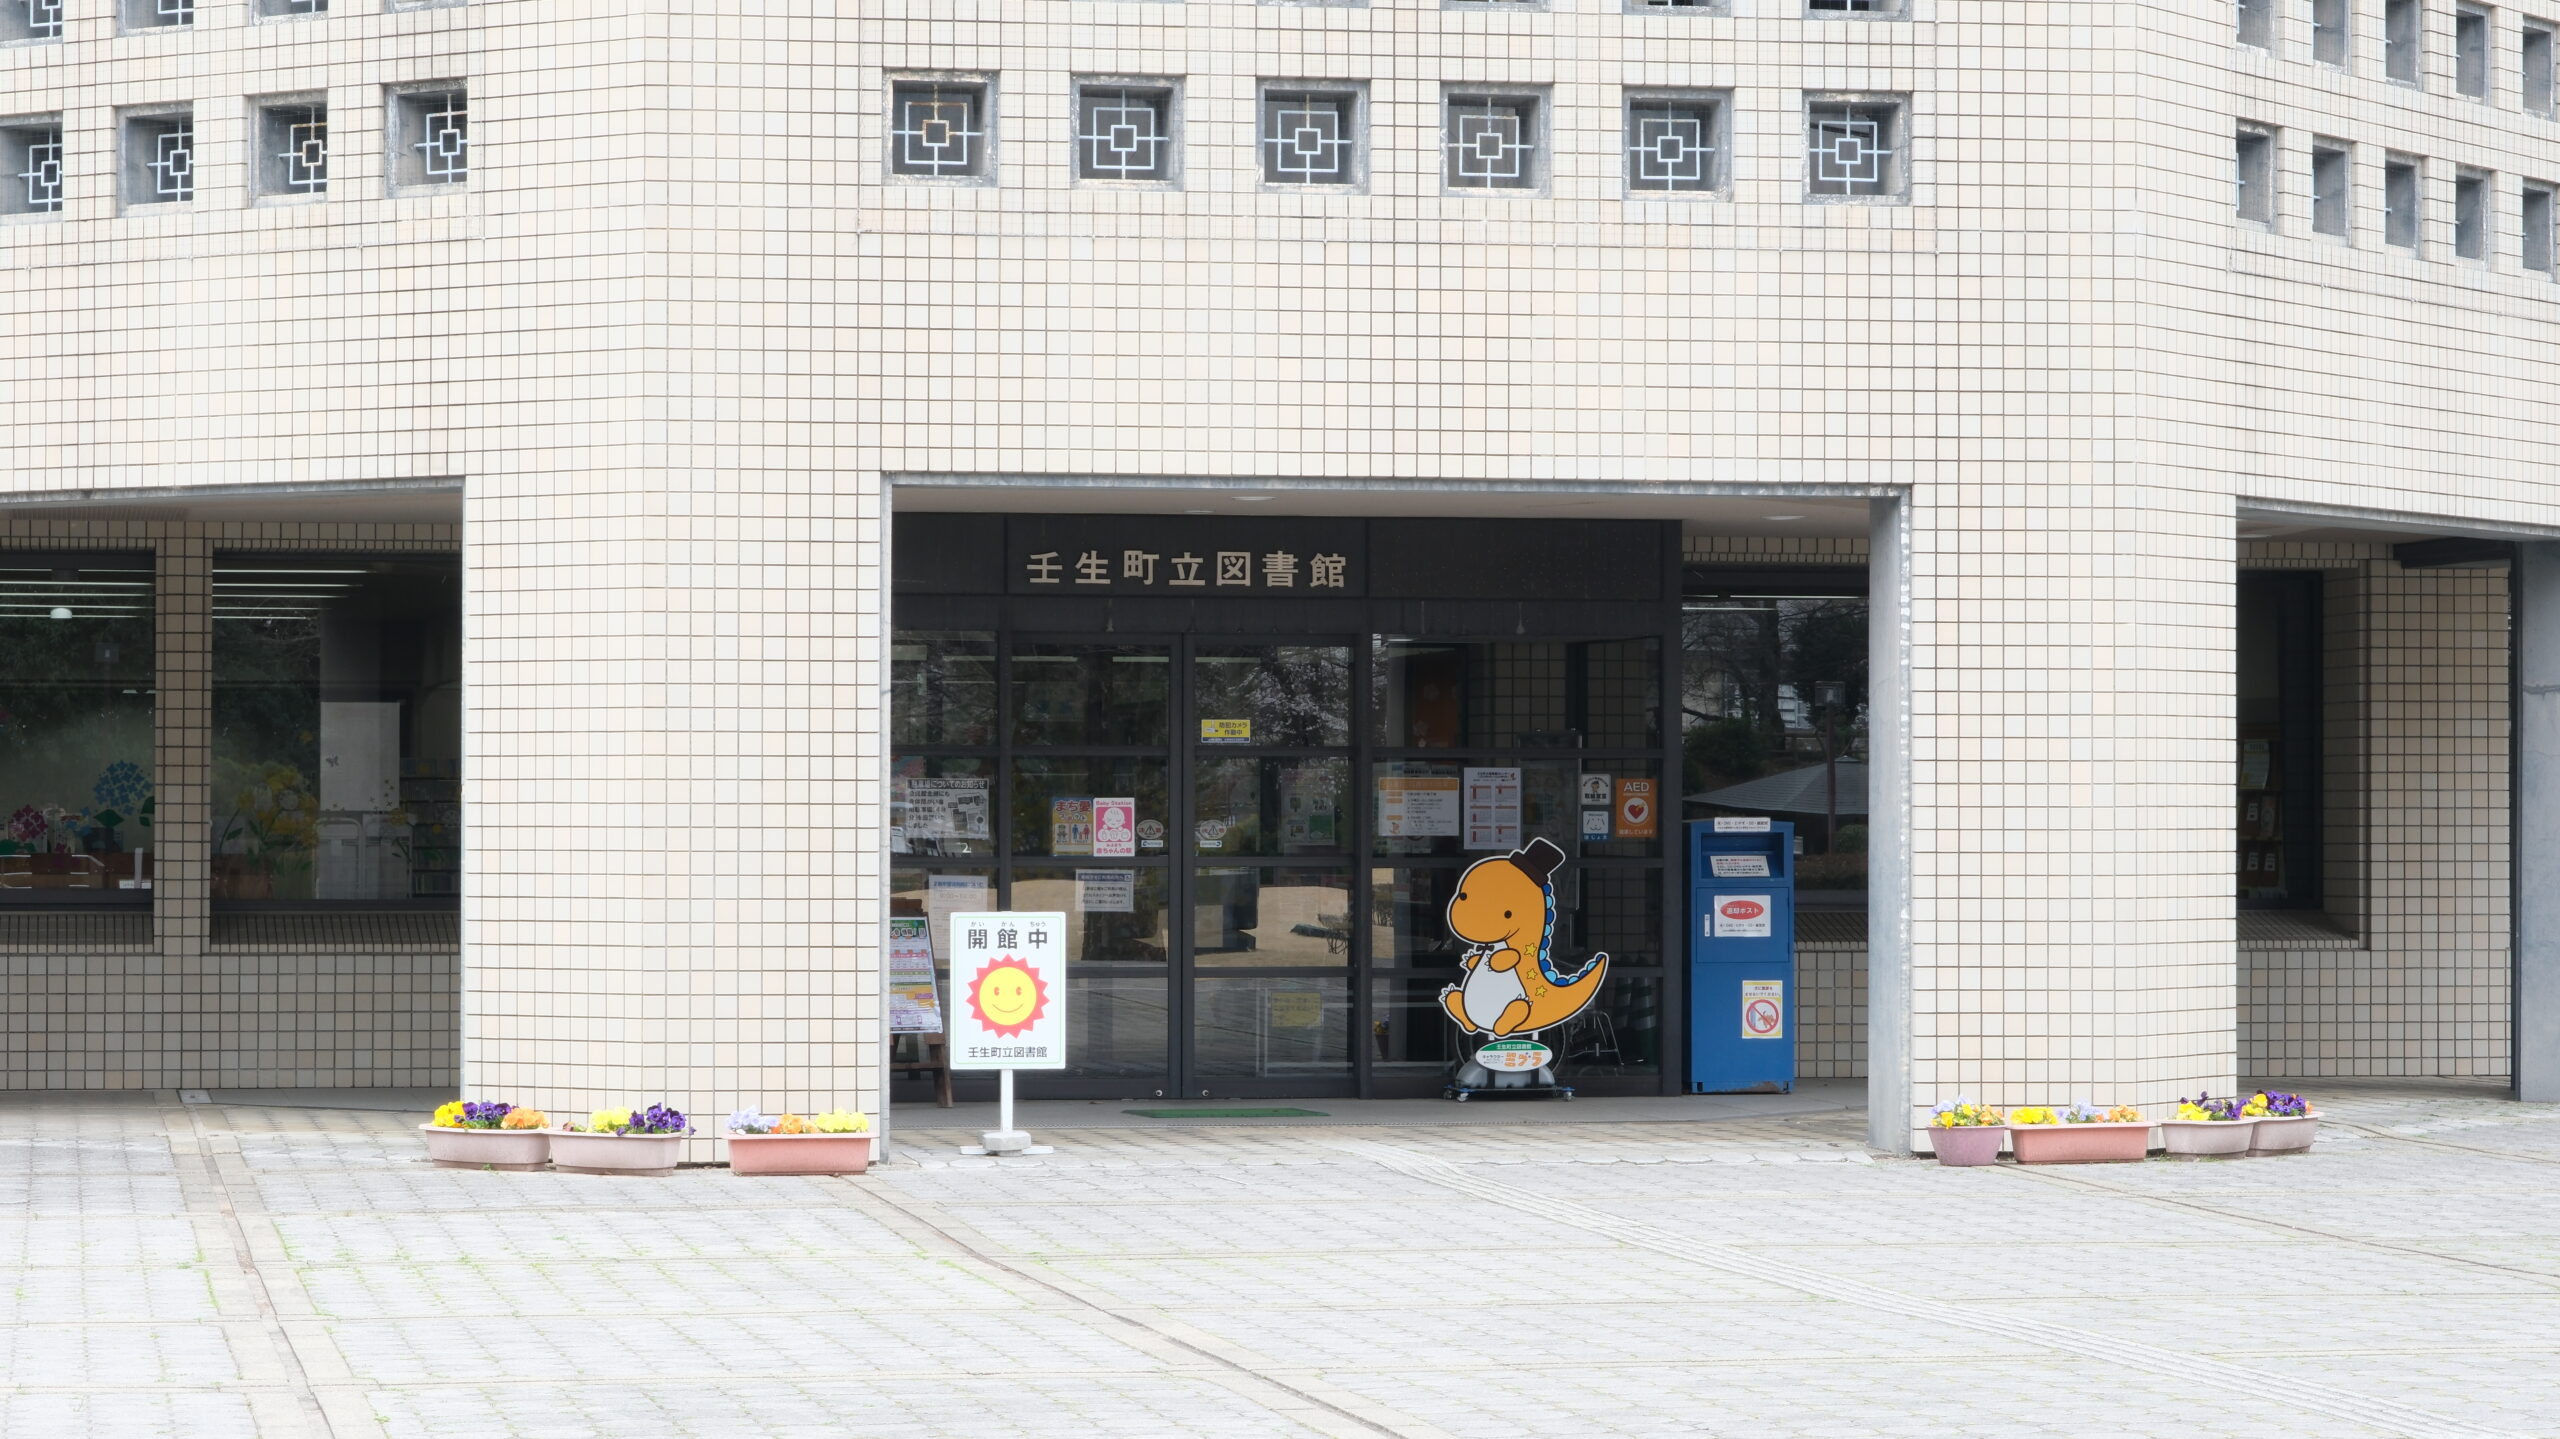 壬生町立図書館
